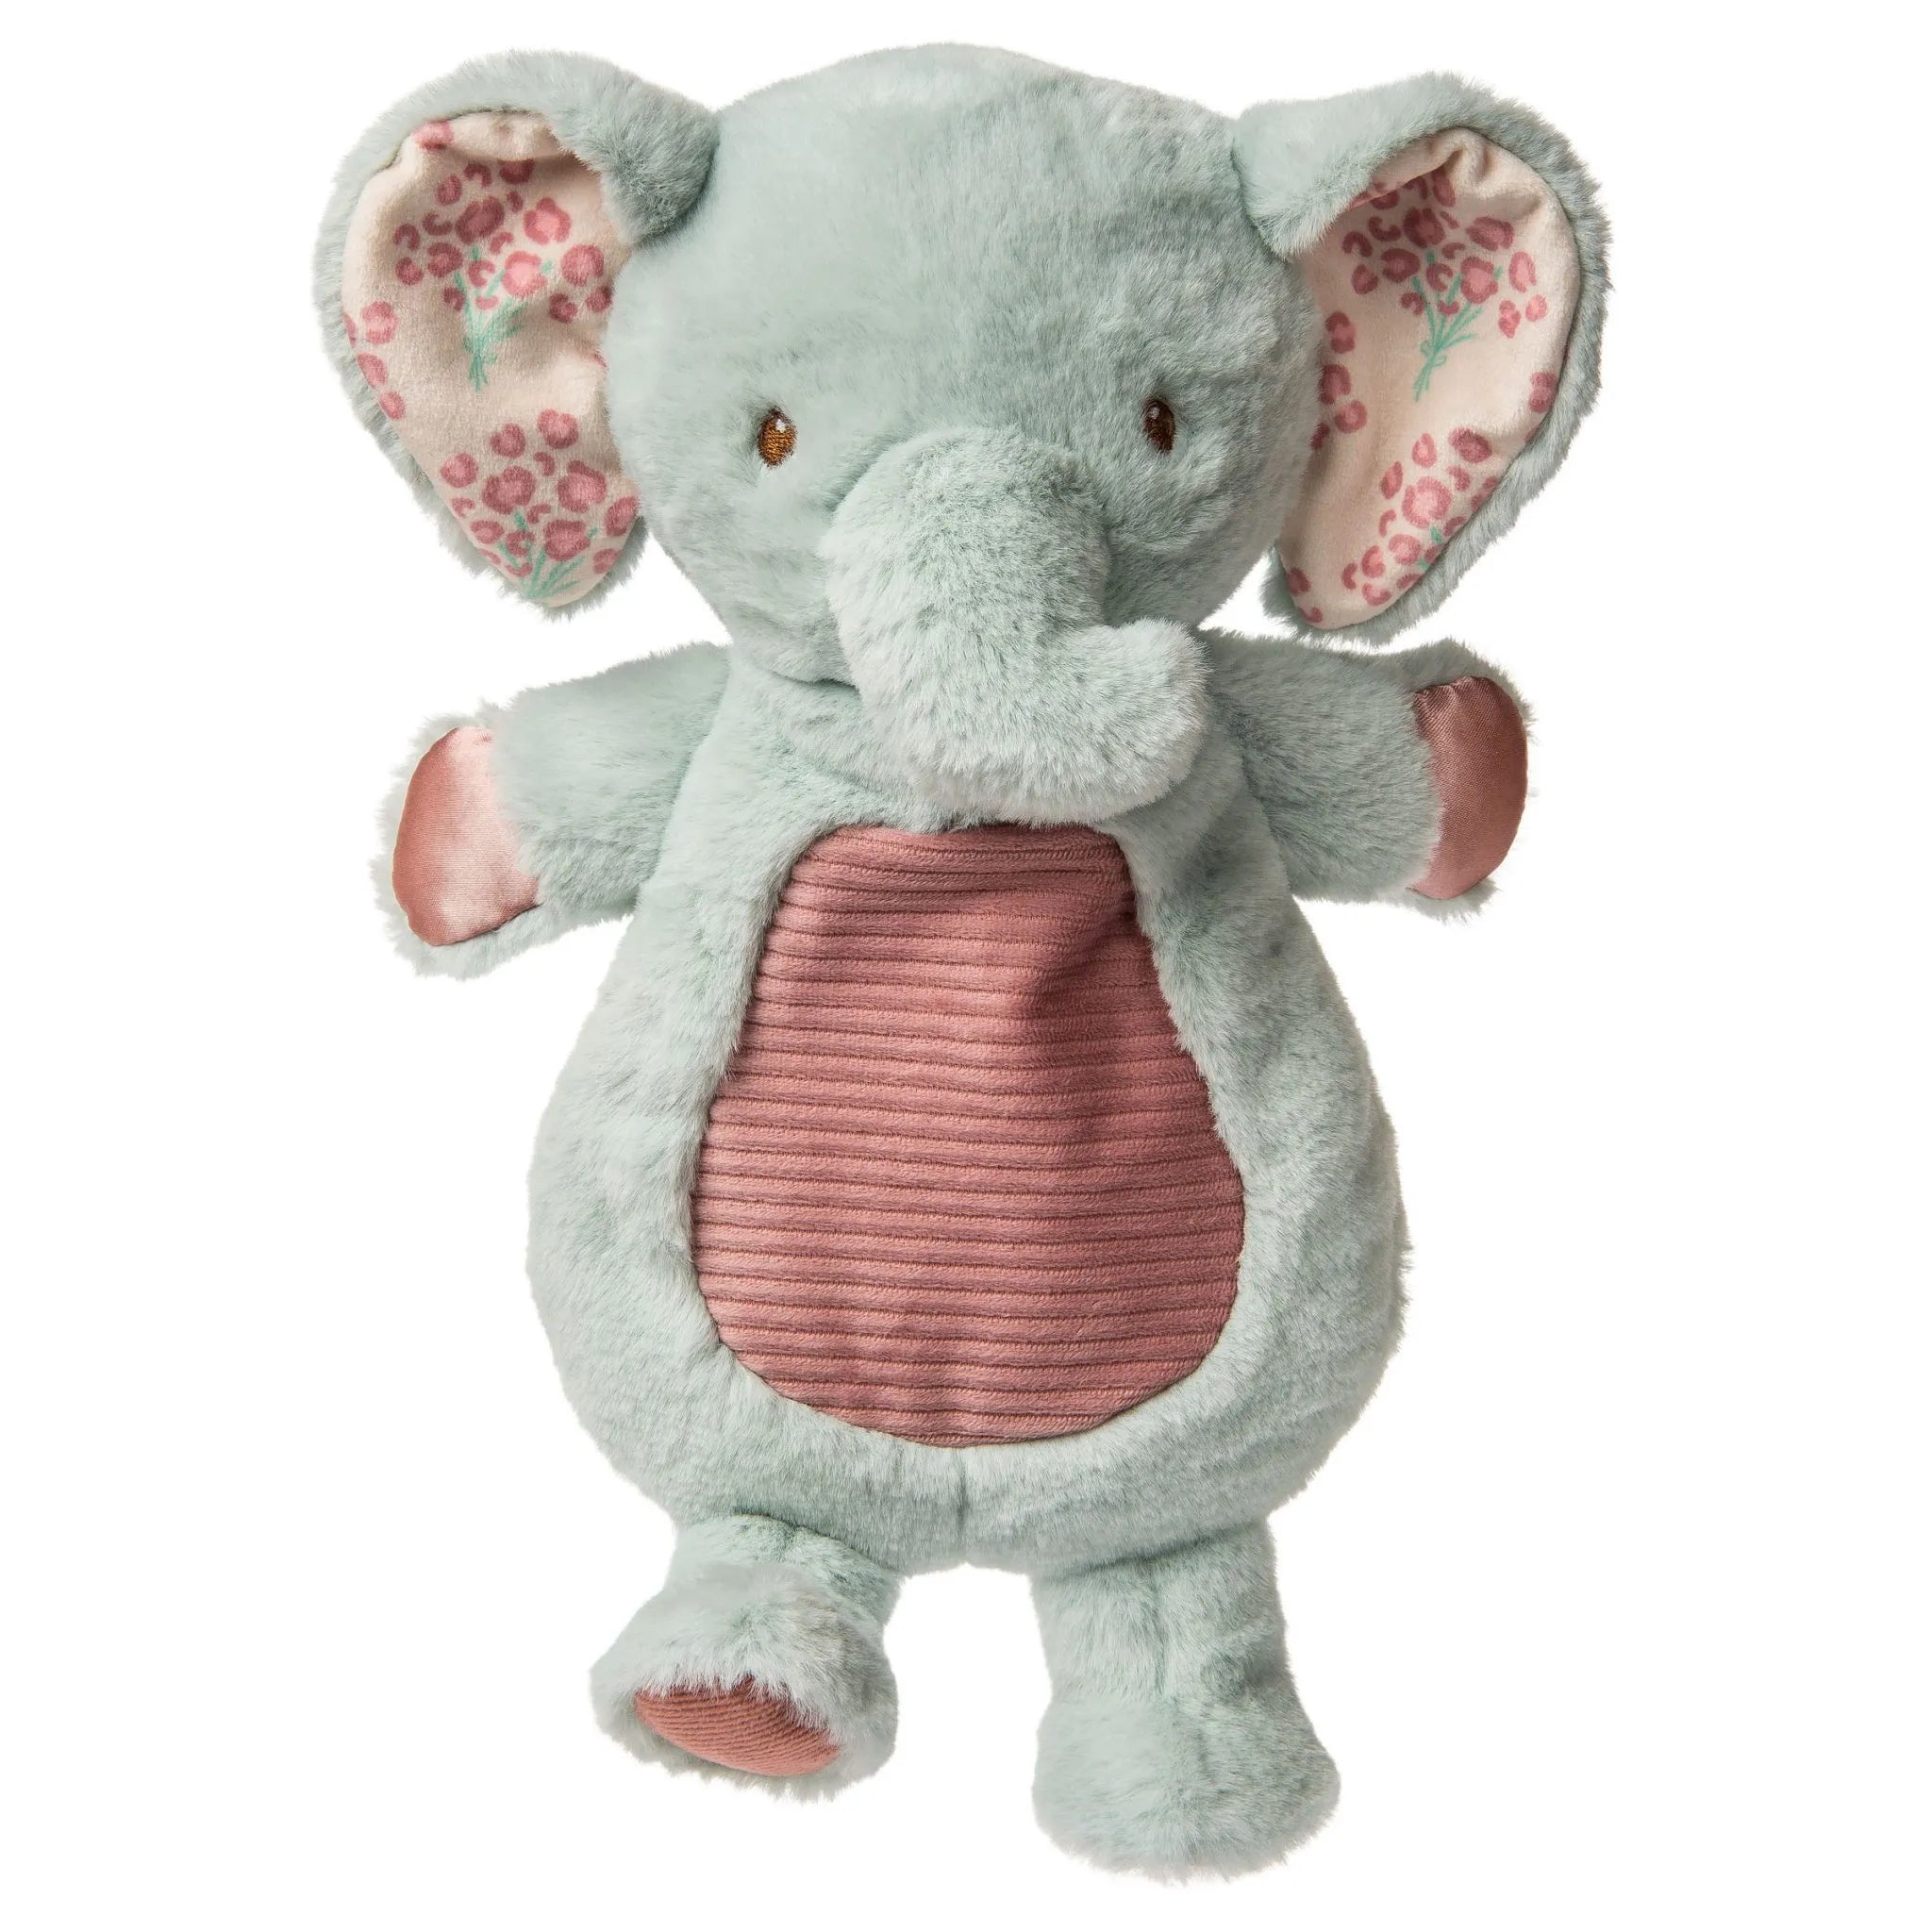 Little But Fierce Elephant Lovey by Mary Meyer